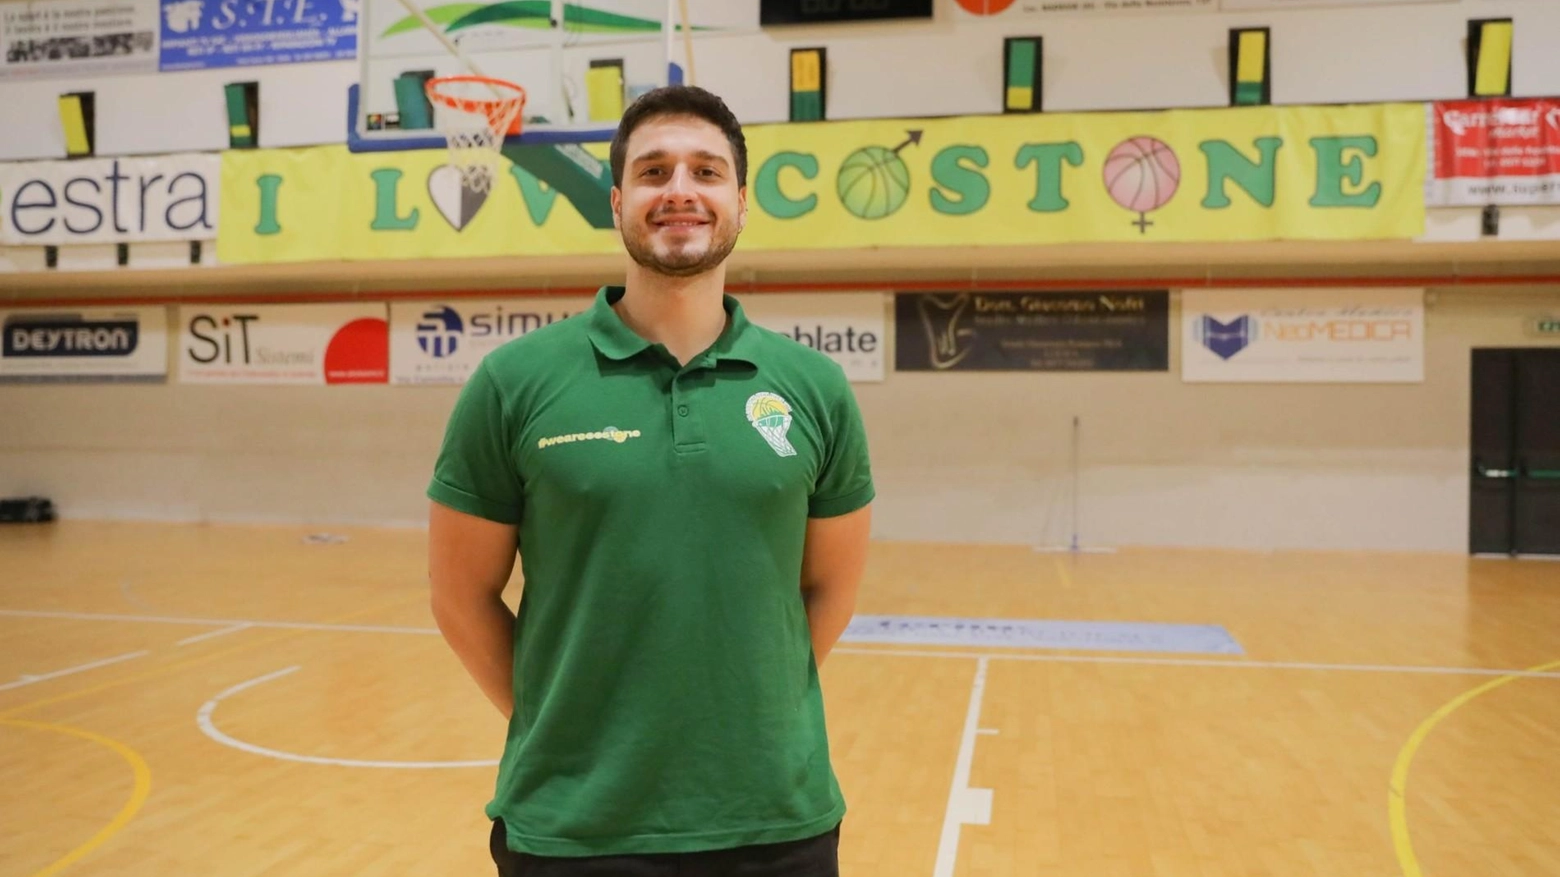 La Vismederi Costone conferma Giovanni Perinti come preparatore atletico per la terza stagione. Nuovi arrivi e conferme nel team in vista della Serie B Interregionale.